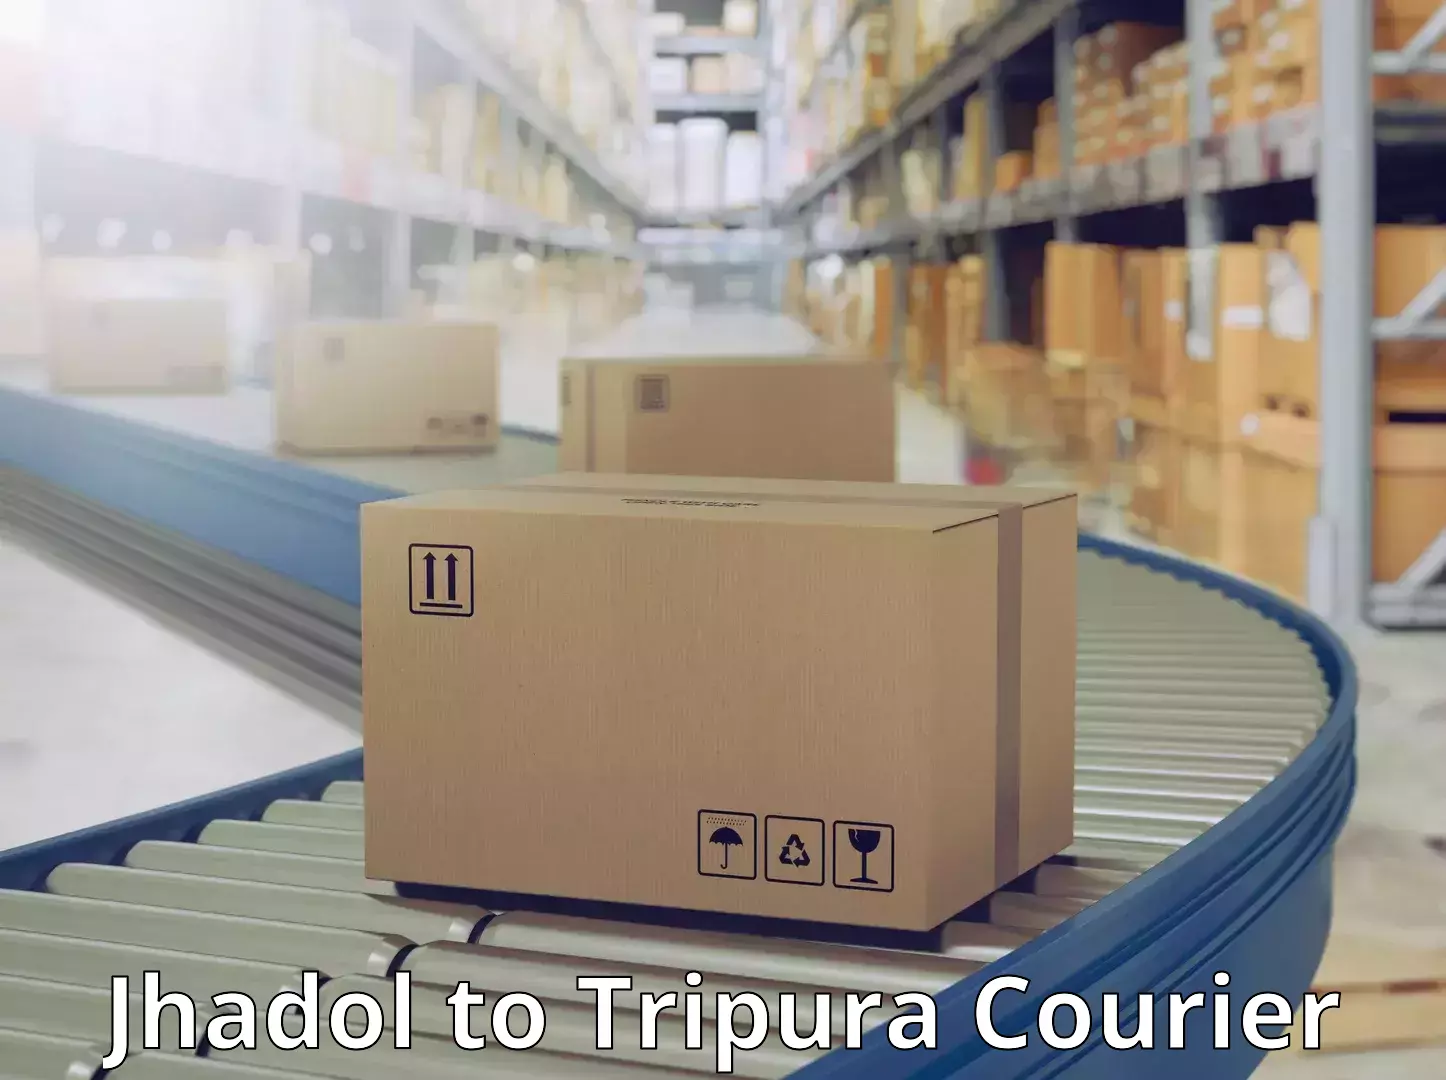 Fast shipping solutions Jhadol to IIIT Agartala